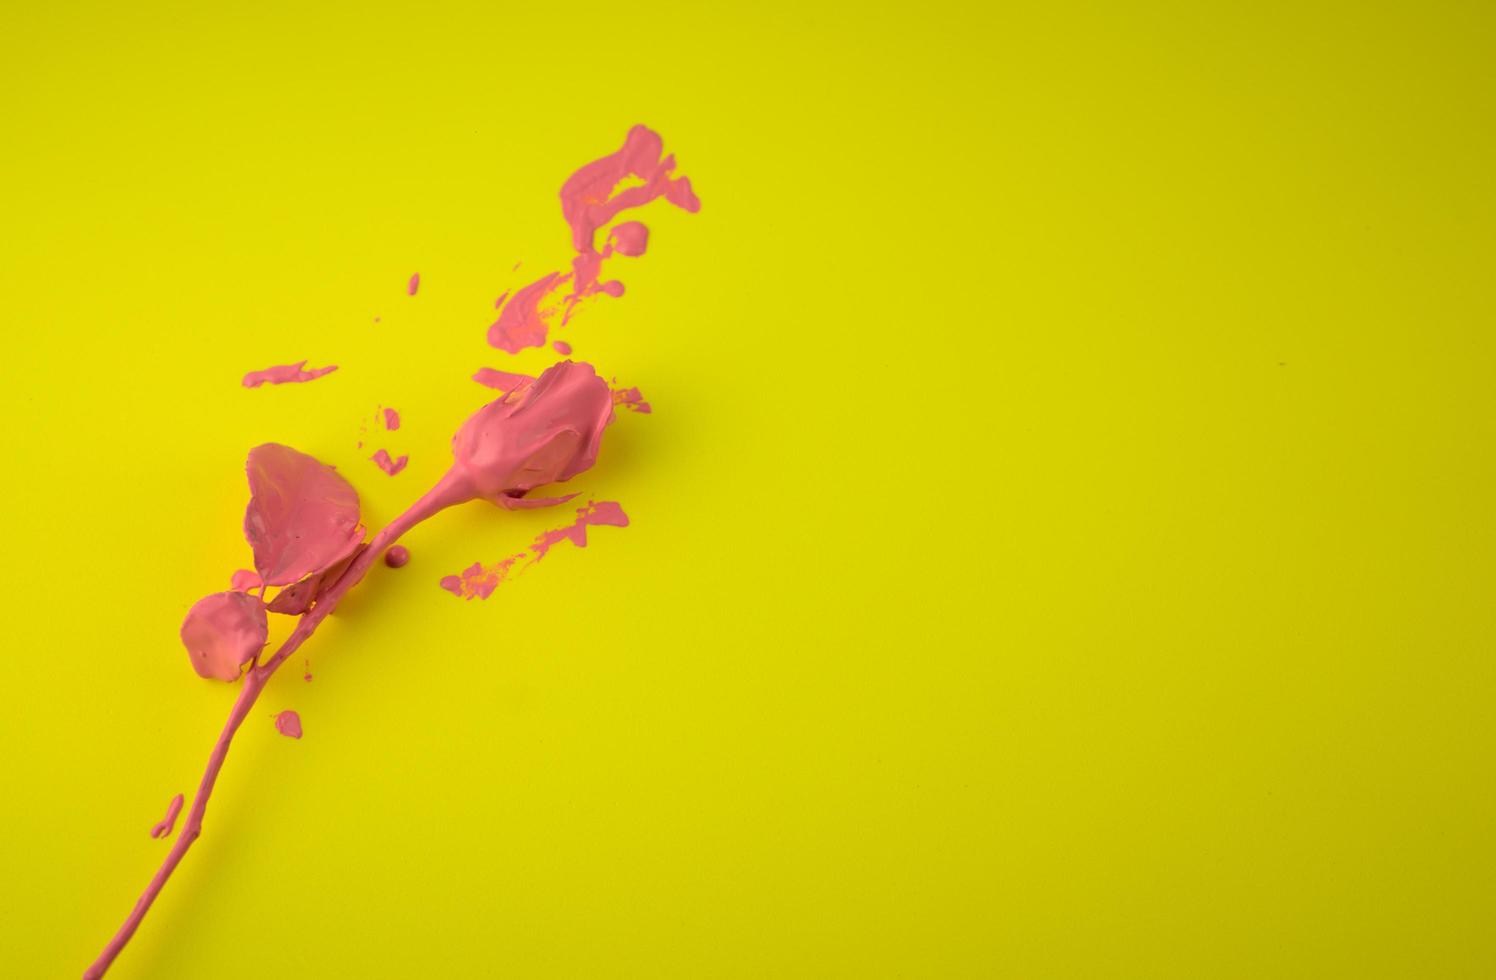 rozencoating, druipend van natte, doorweekte roze acrylinkt, vloeibare kleur plat leggen, geïsoleerd op levendige kleurrijke gele abstracte achtergrond foto